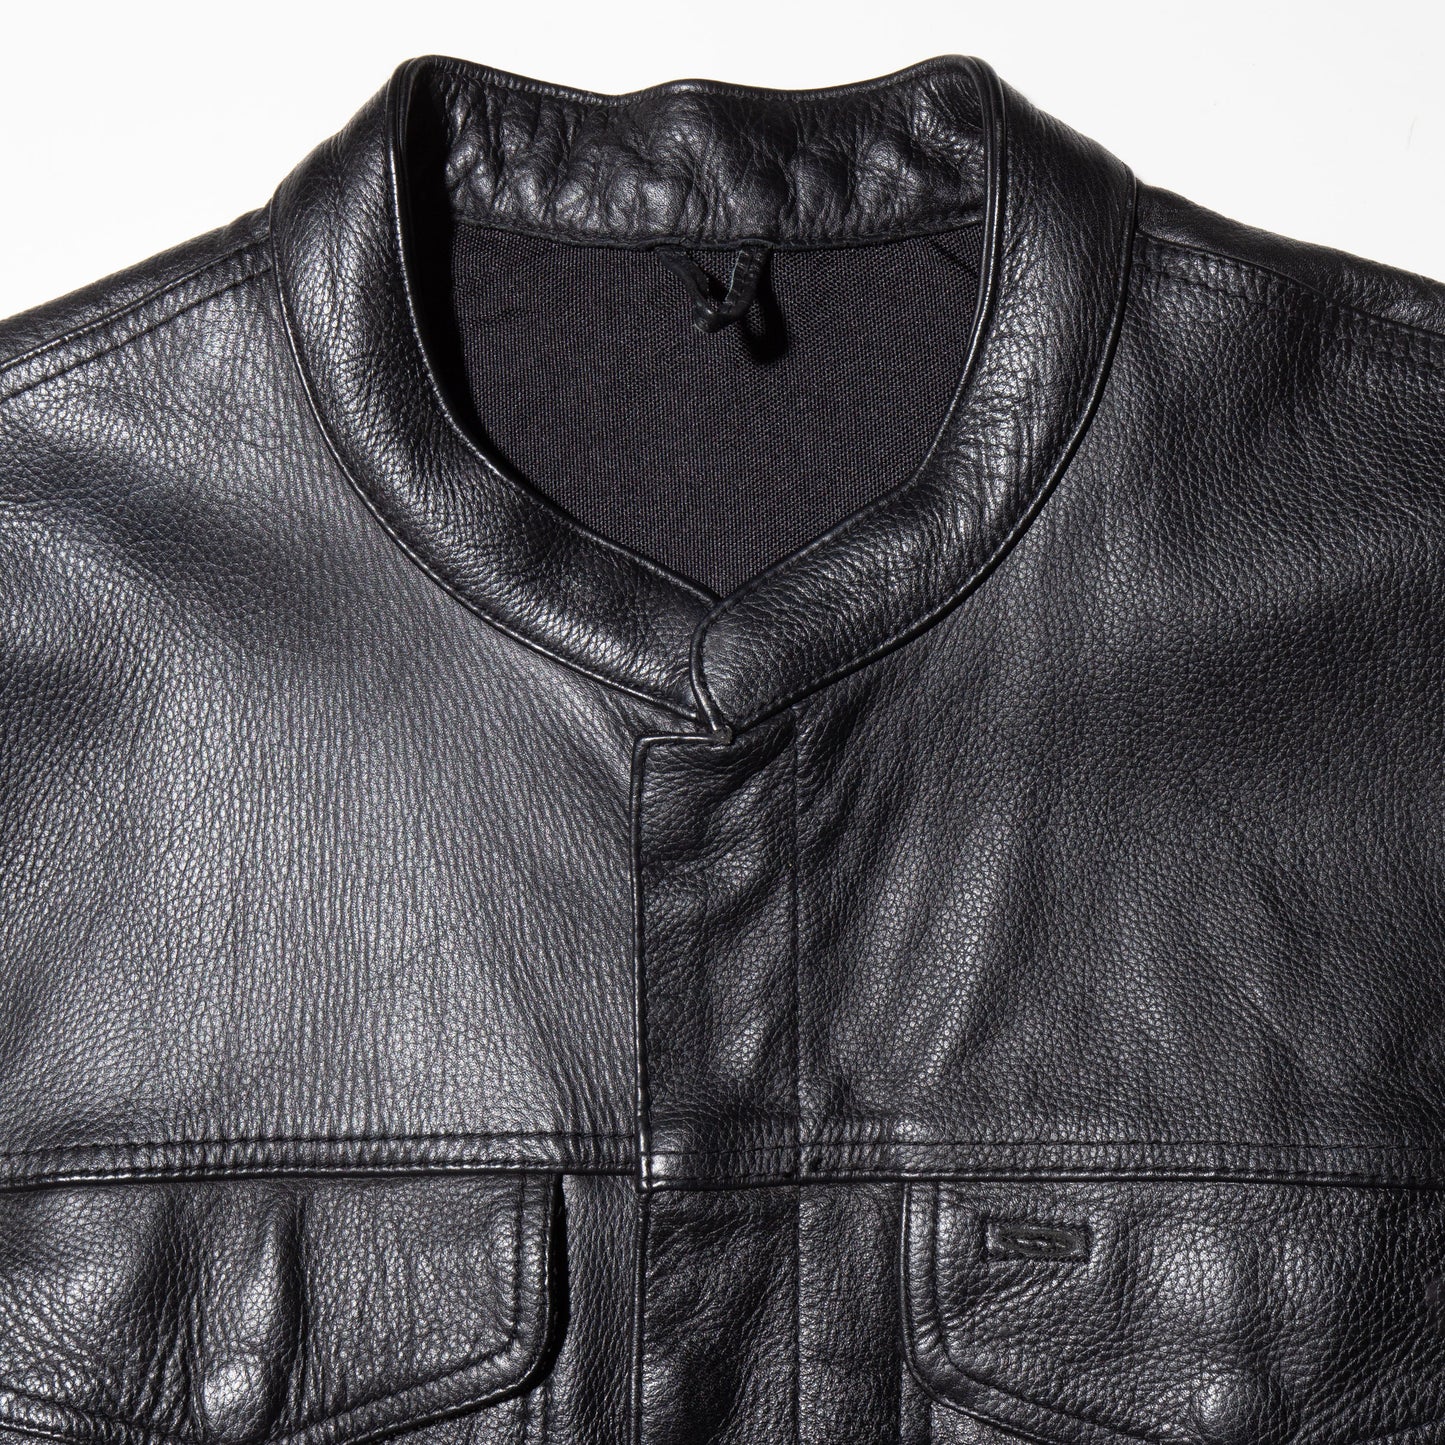 vintage leather trucker vest